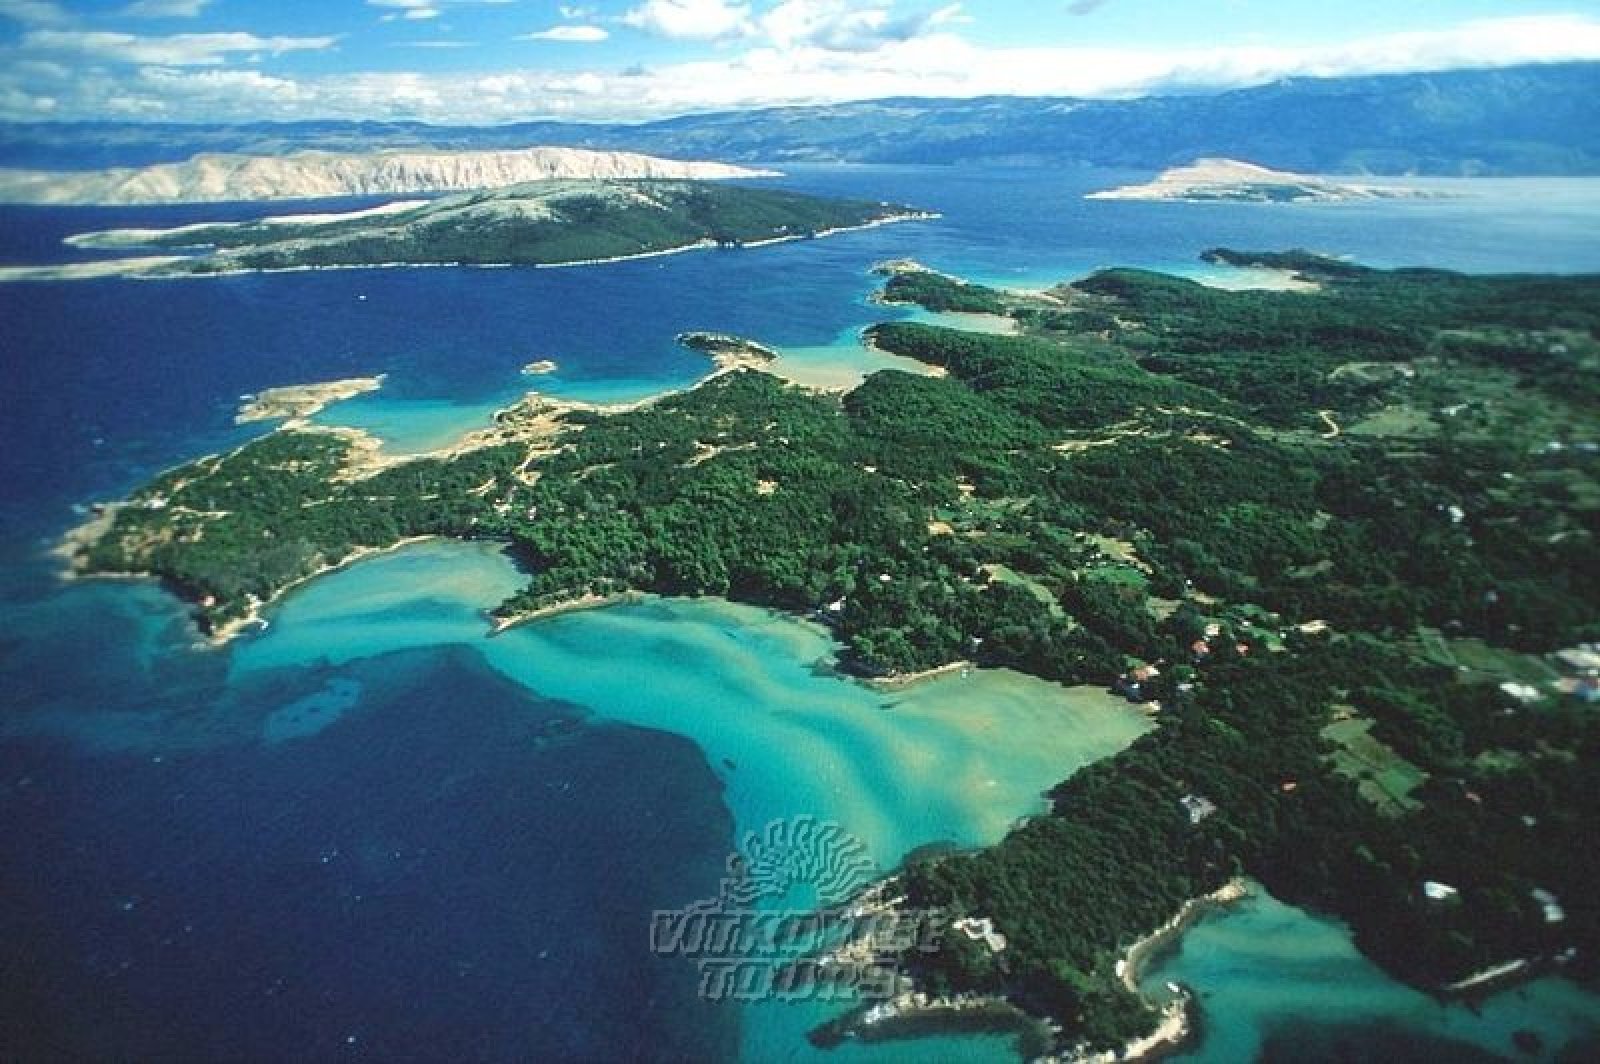 Ostrov Rab v Chorvátsku - najkrajšia dovolenka v lete 2020